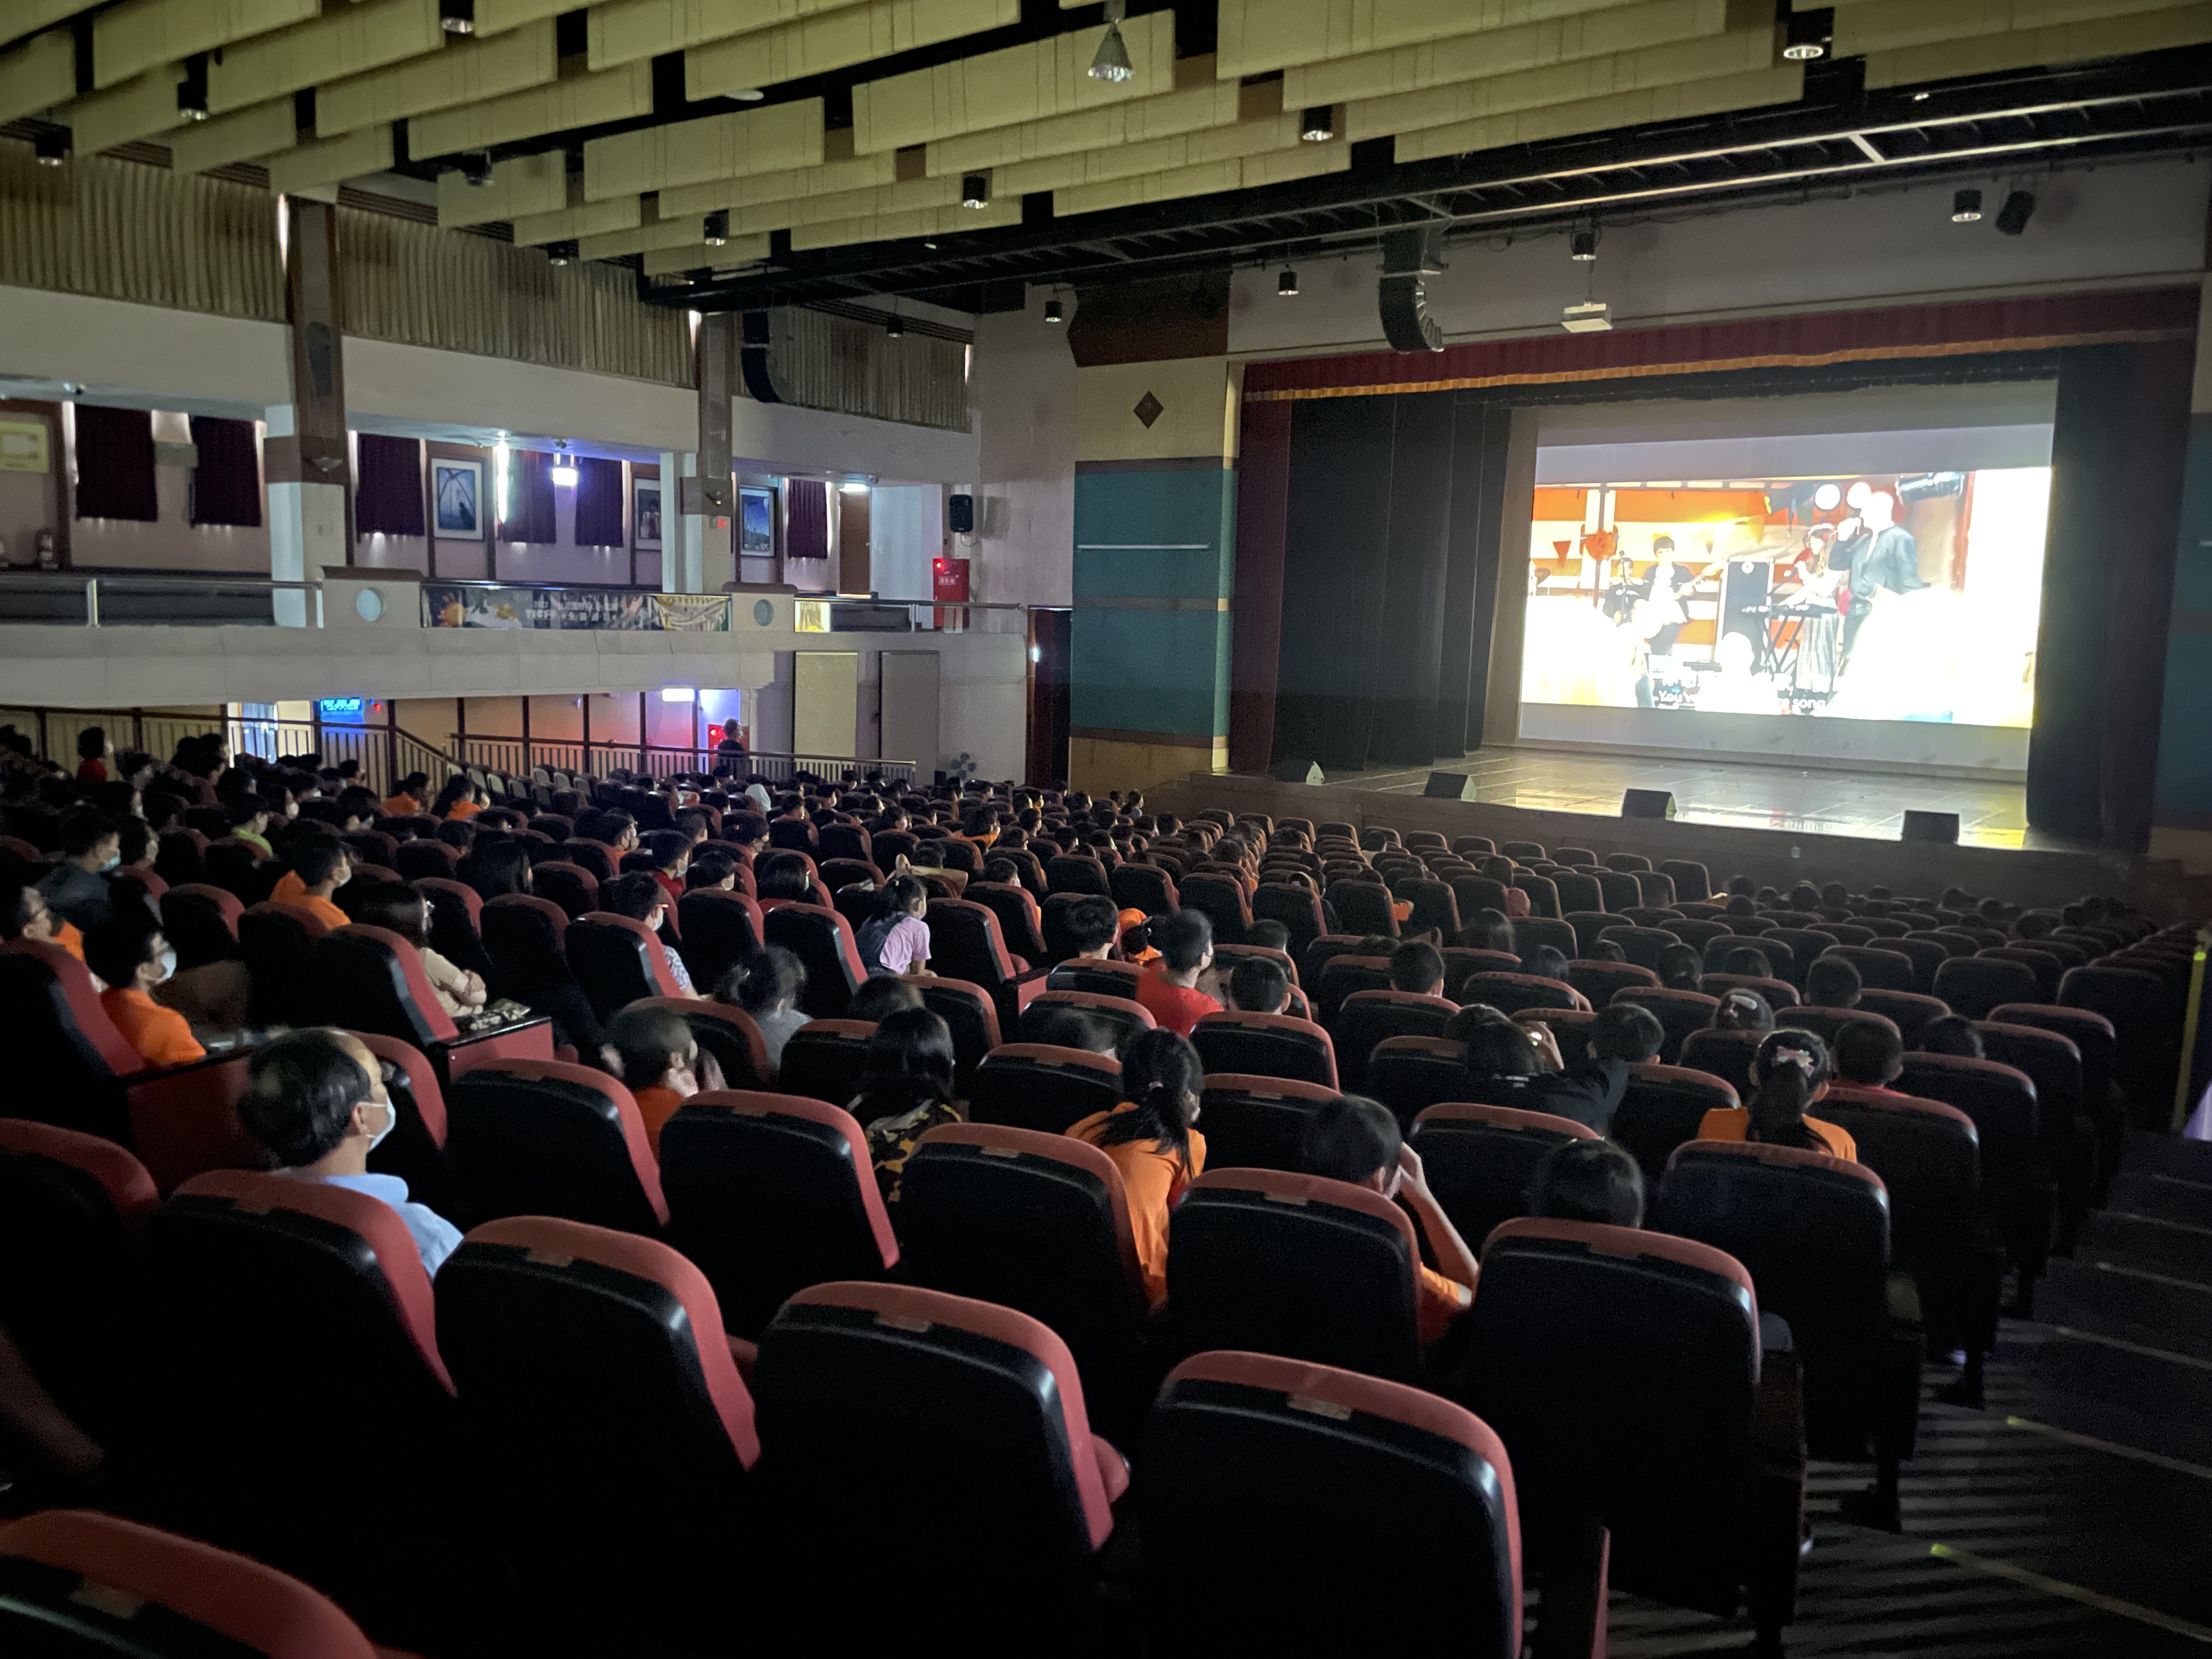 「2022台灣國際兒童影展在羅東」全國首站羅東起跑 優質影片開拓在地視野